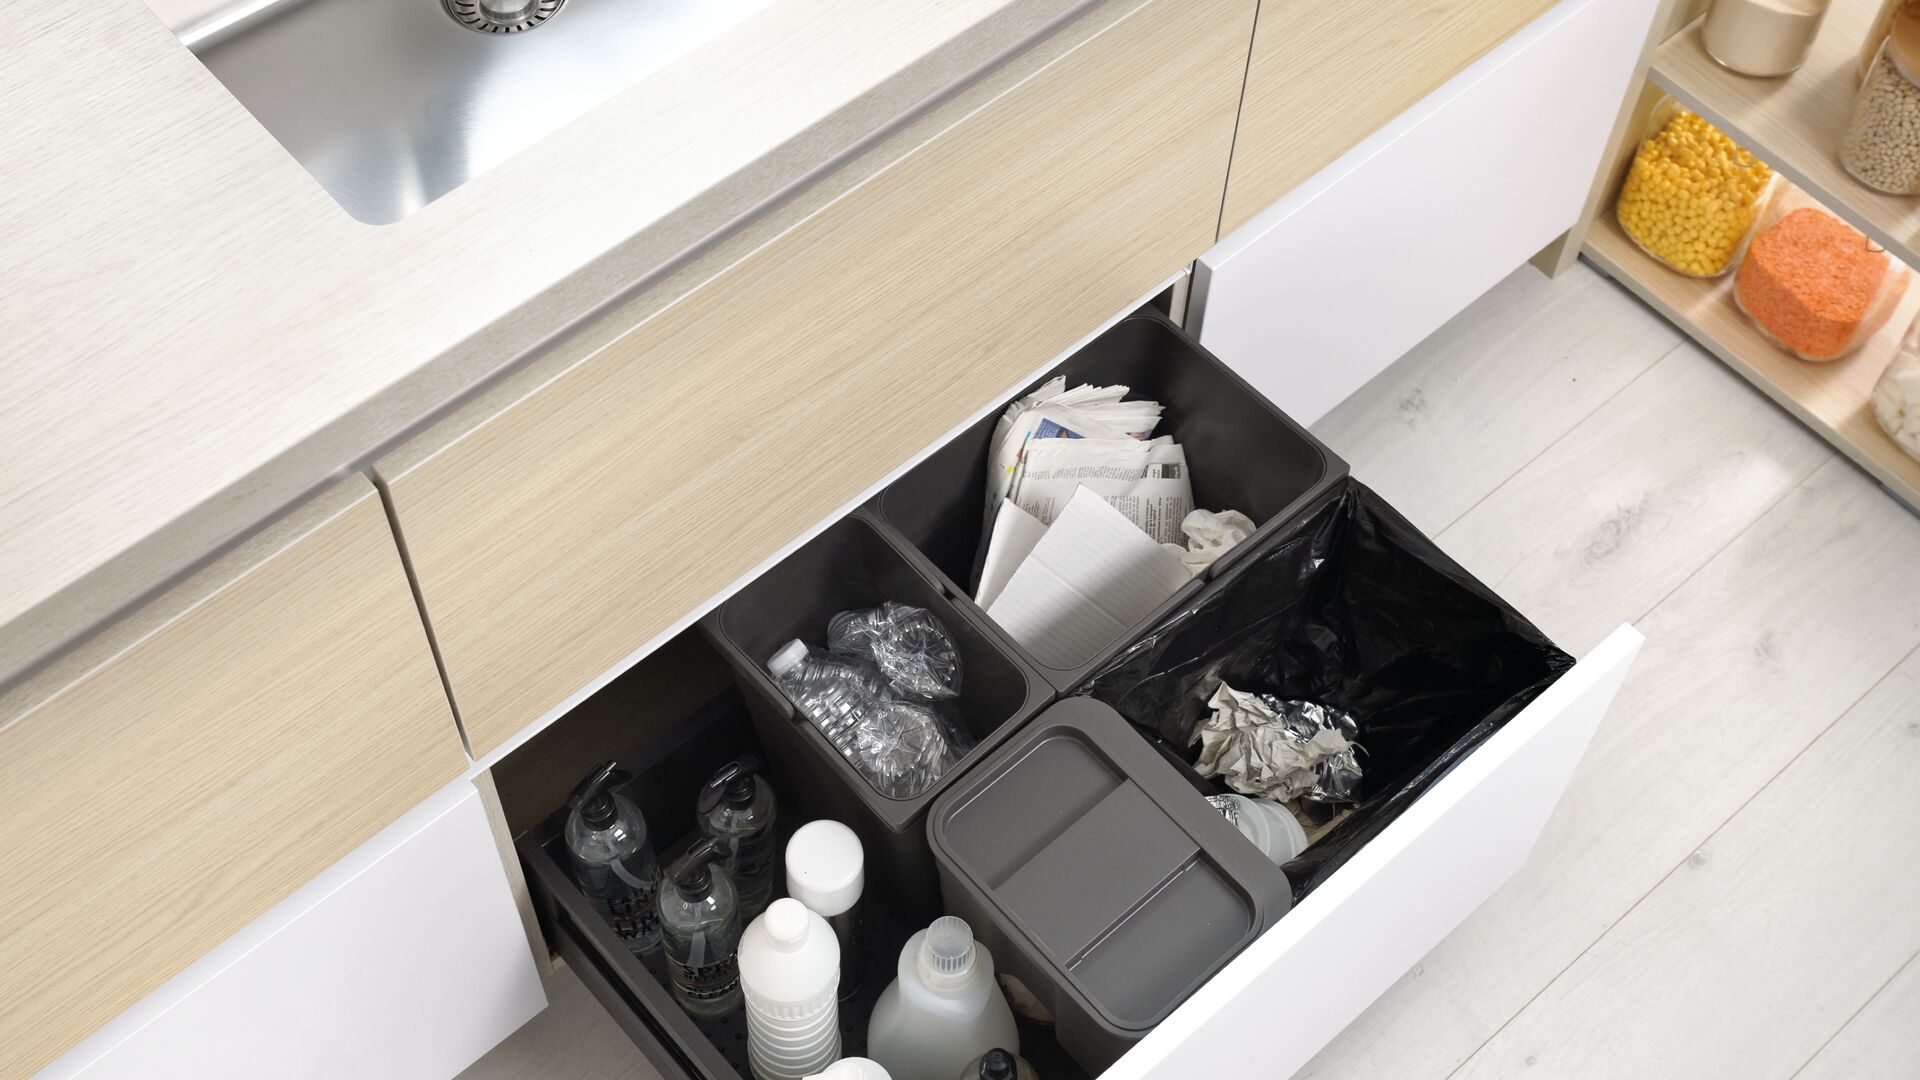 Mueble bajo fregadero con cubo de basura de separación de residuos y bandejas de almacenamiento para productos del hogar